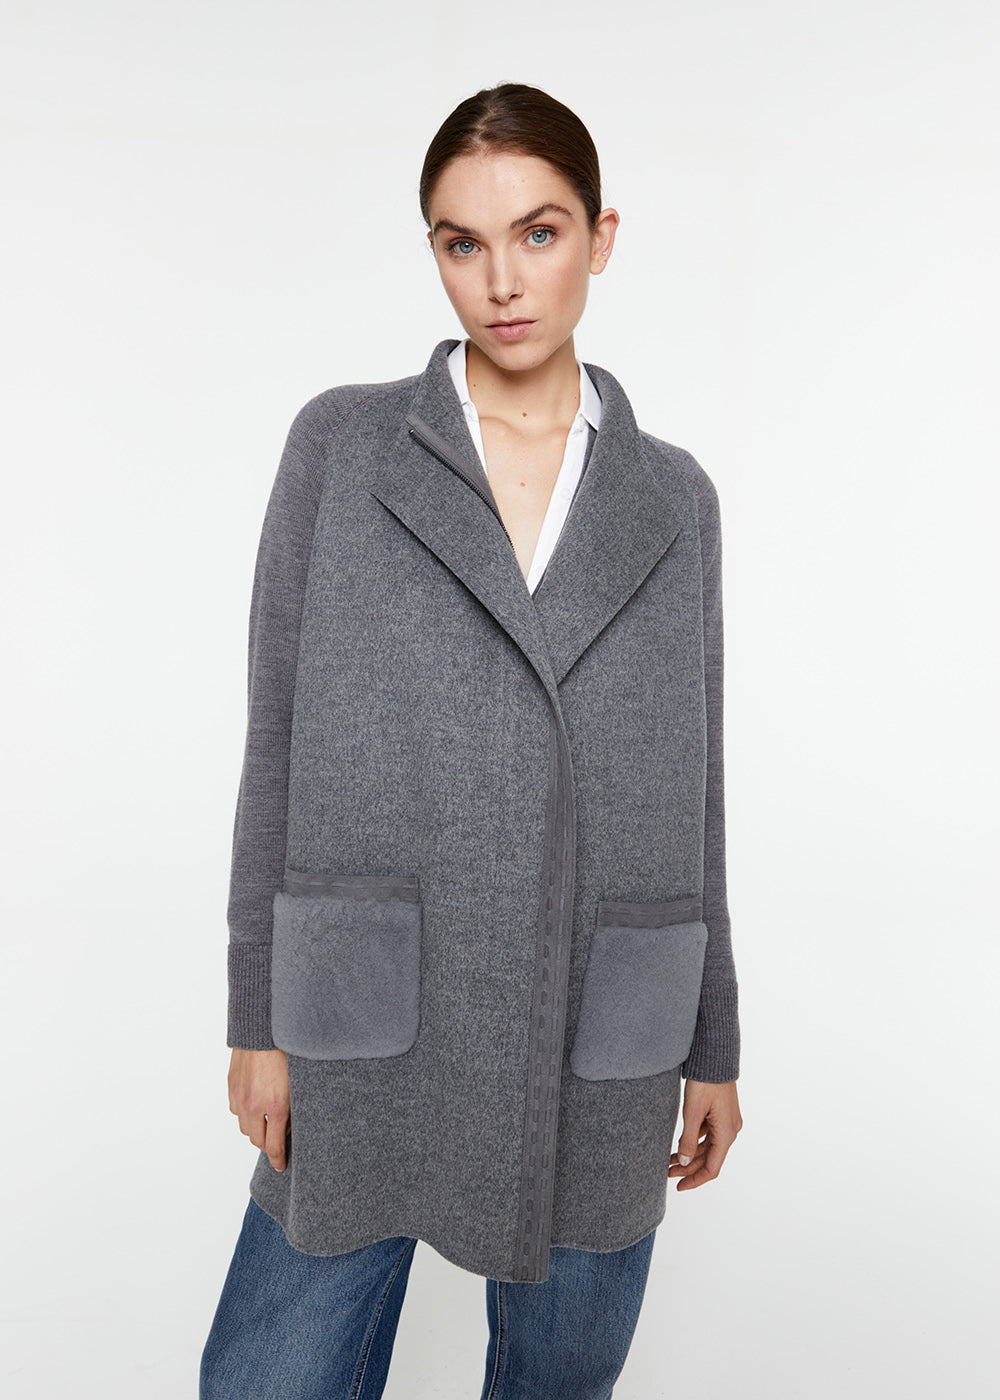 manteau mi-saison laine cachemire poche peau lainée gris